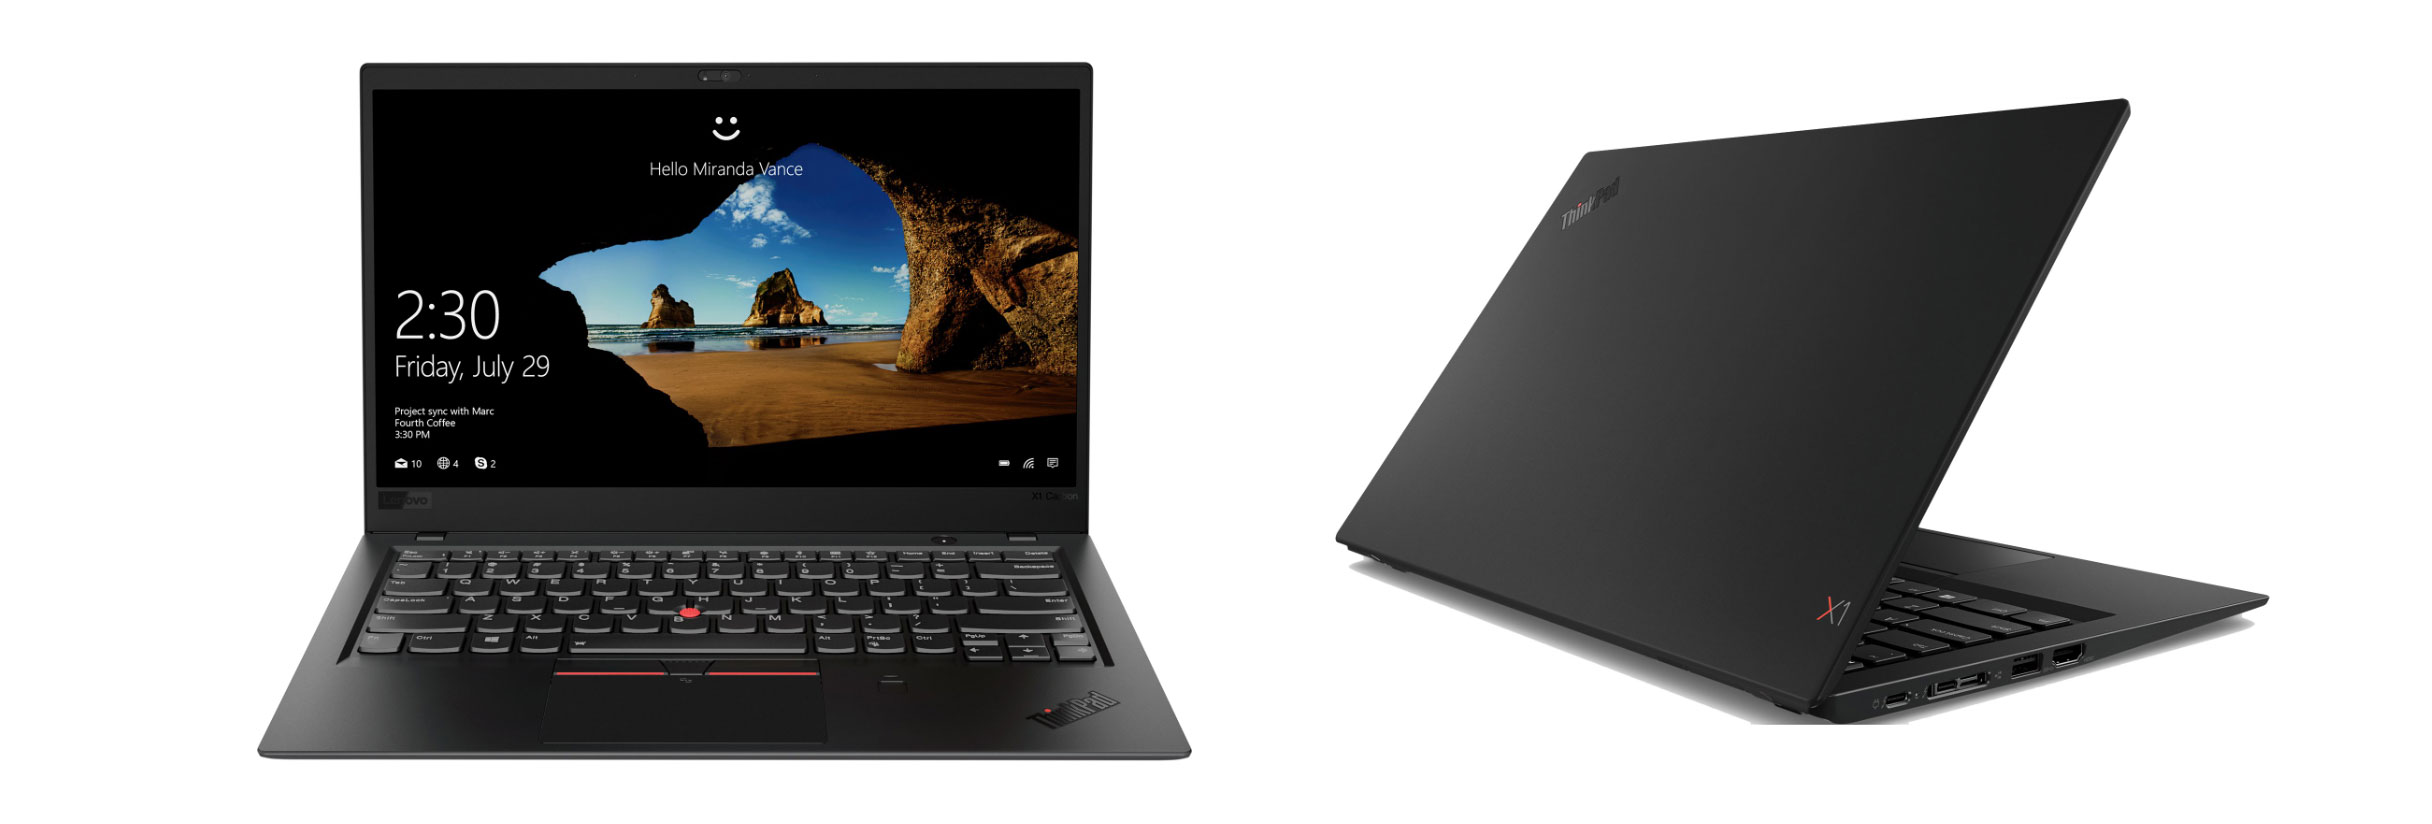 Lenovo ThinkPad X1 Carbon - lichtgewicht en boordevol functies, maar duur